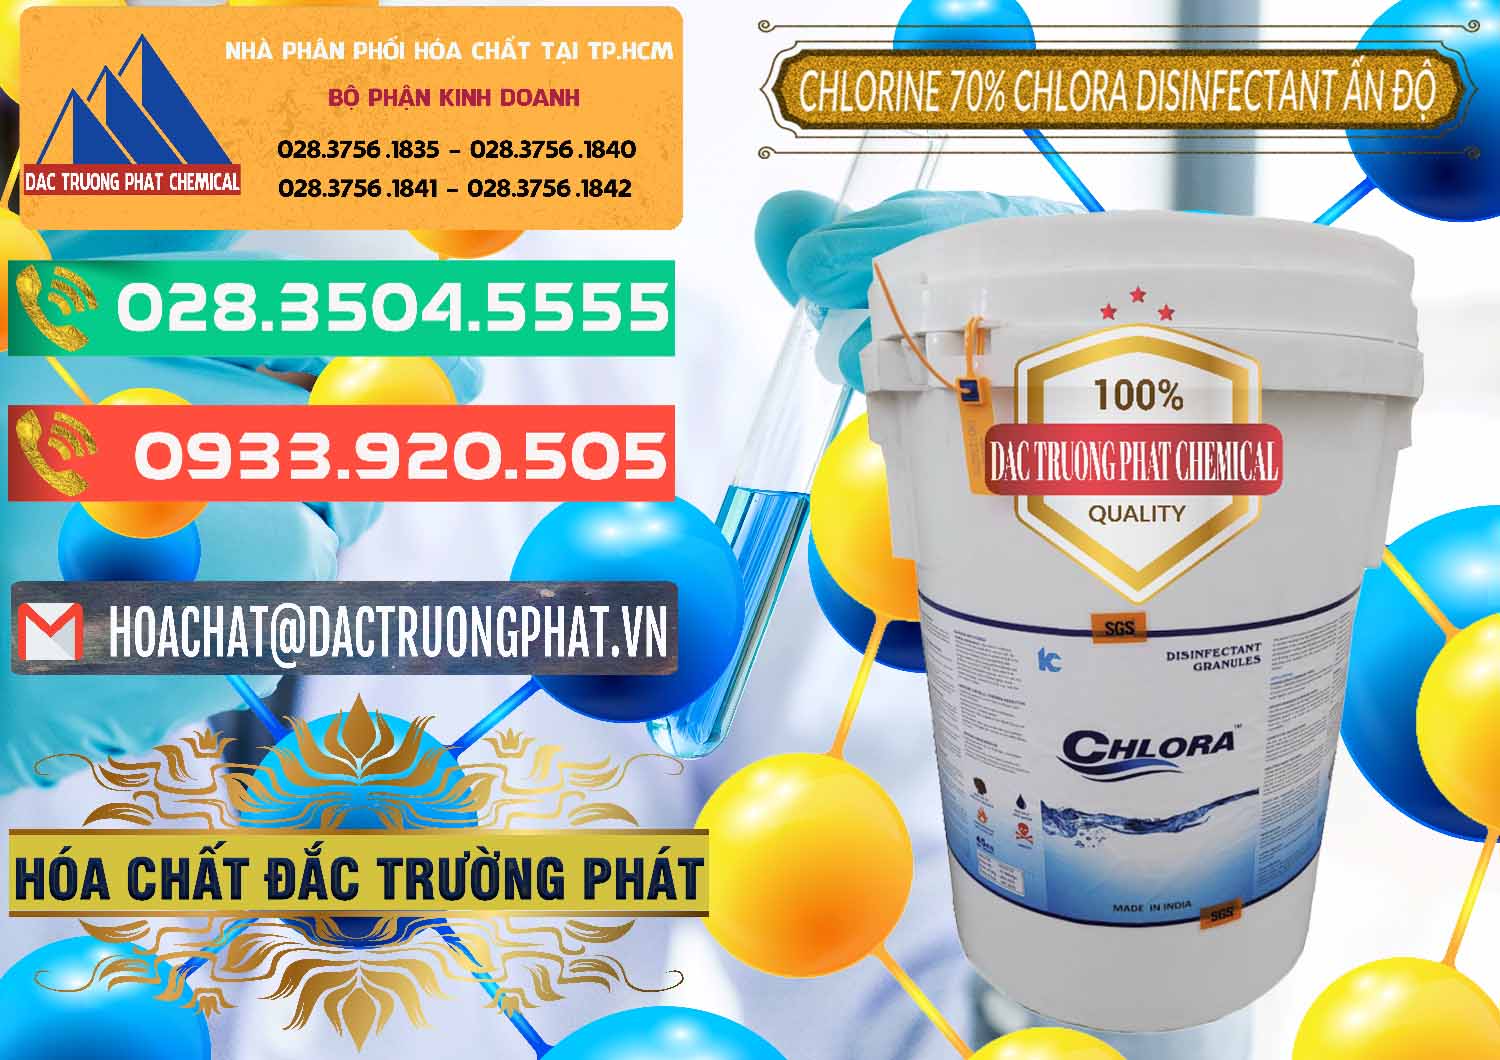 Chuyên nhập khẩu và bán Chlorine – Clorin 70% Chlora Disinfectant Ấn Độ India - 0213 - Cty chuyên cung cấp - nhập khẩu hóa chất tại TP.HCM - congtyhoachat.com.vn